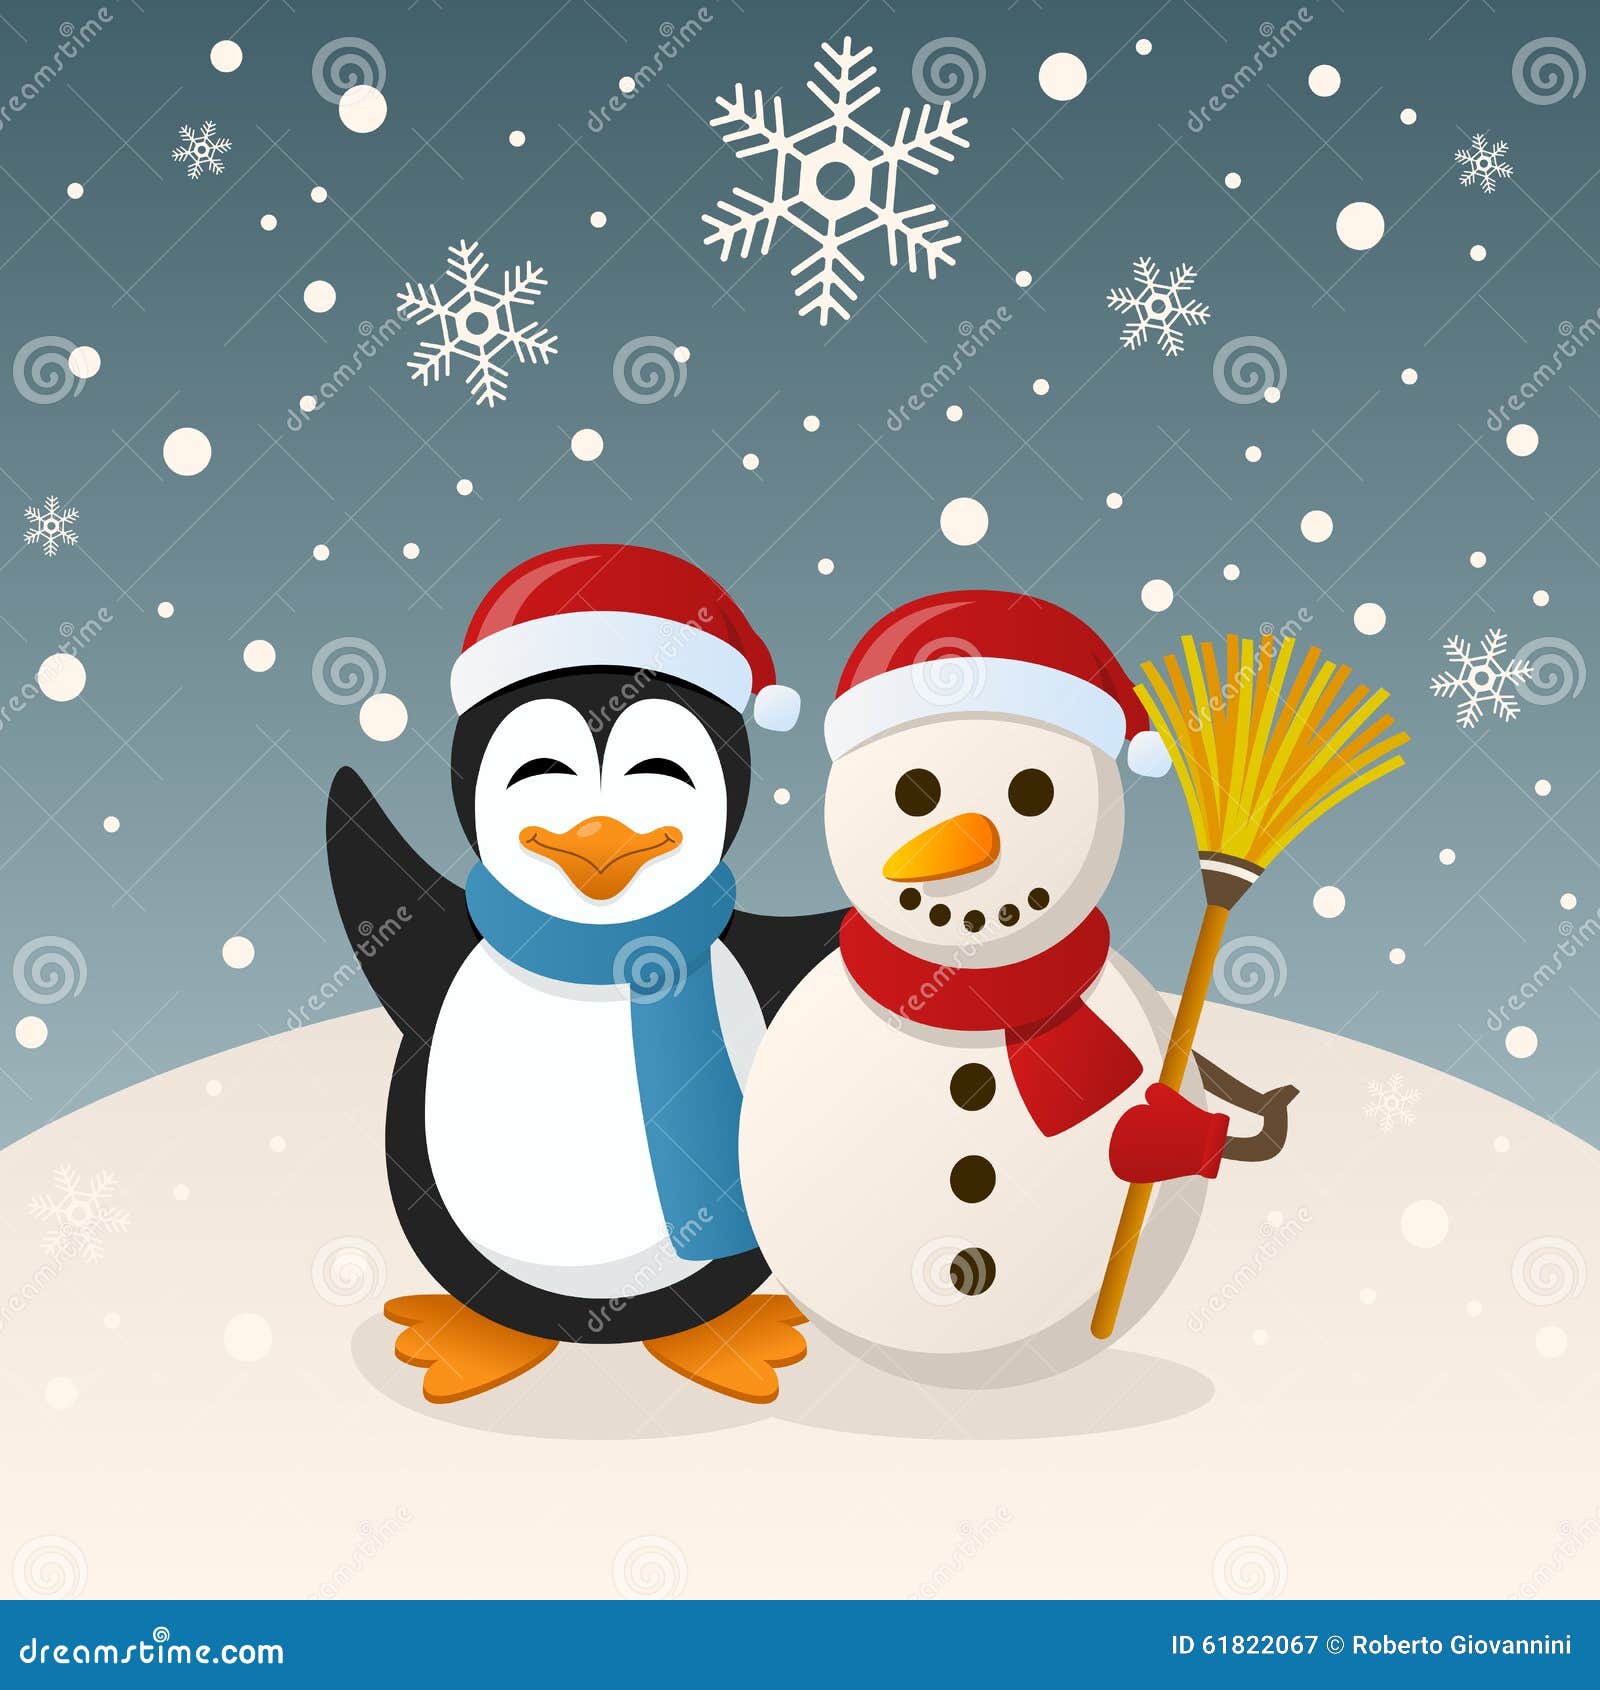 illustration stock bonhomme de neige et pingouin de noël image